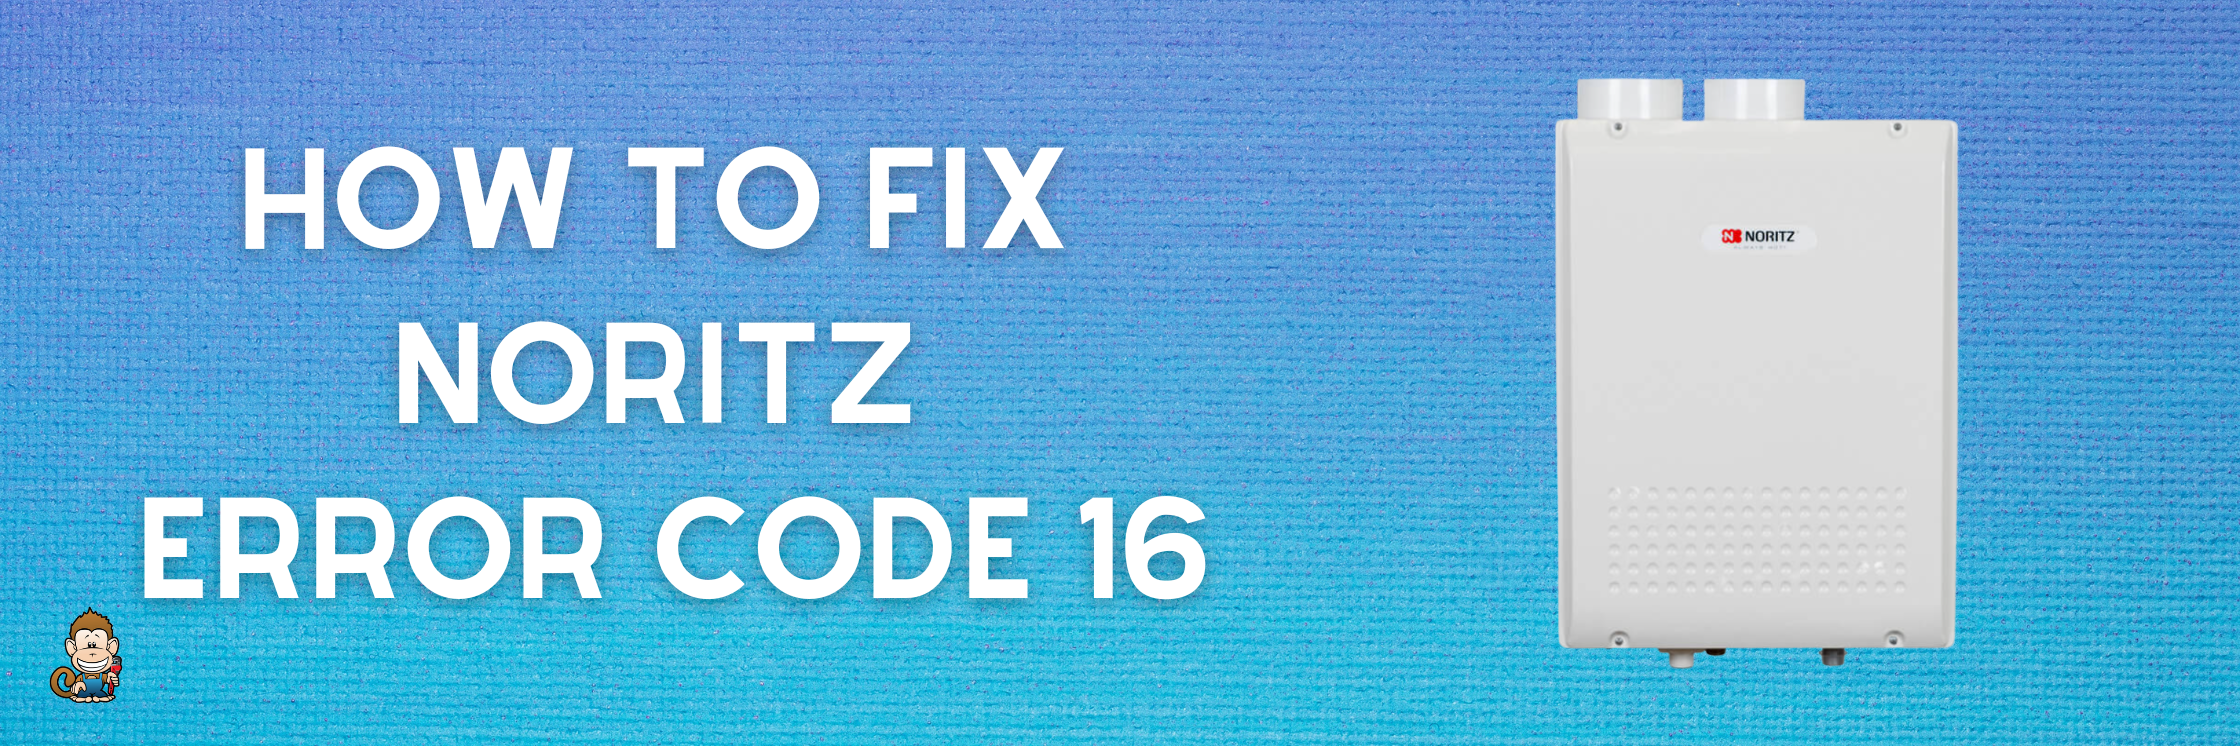 How to Fix Noritz Error Code 16